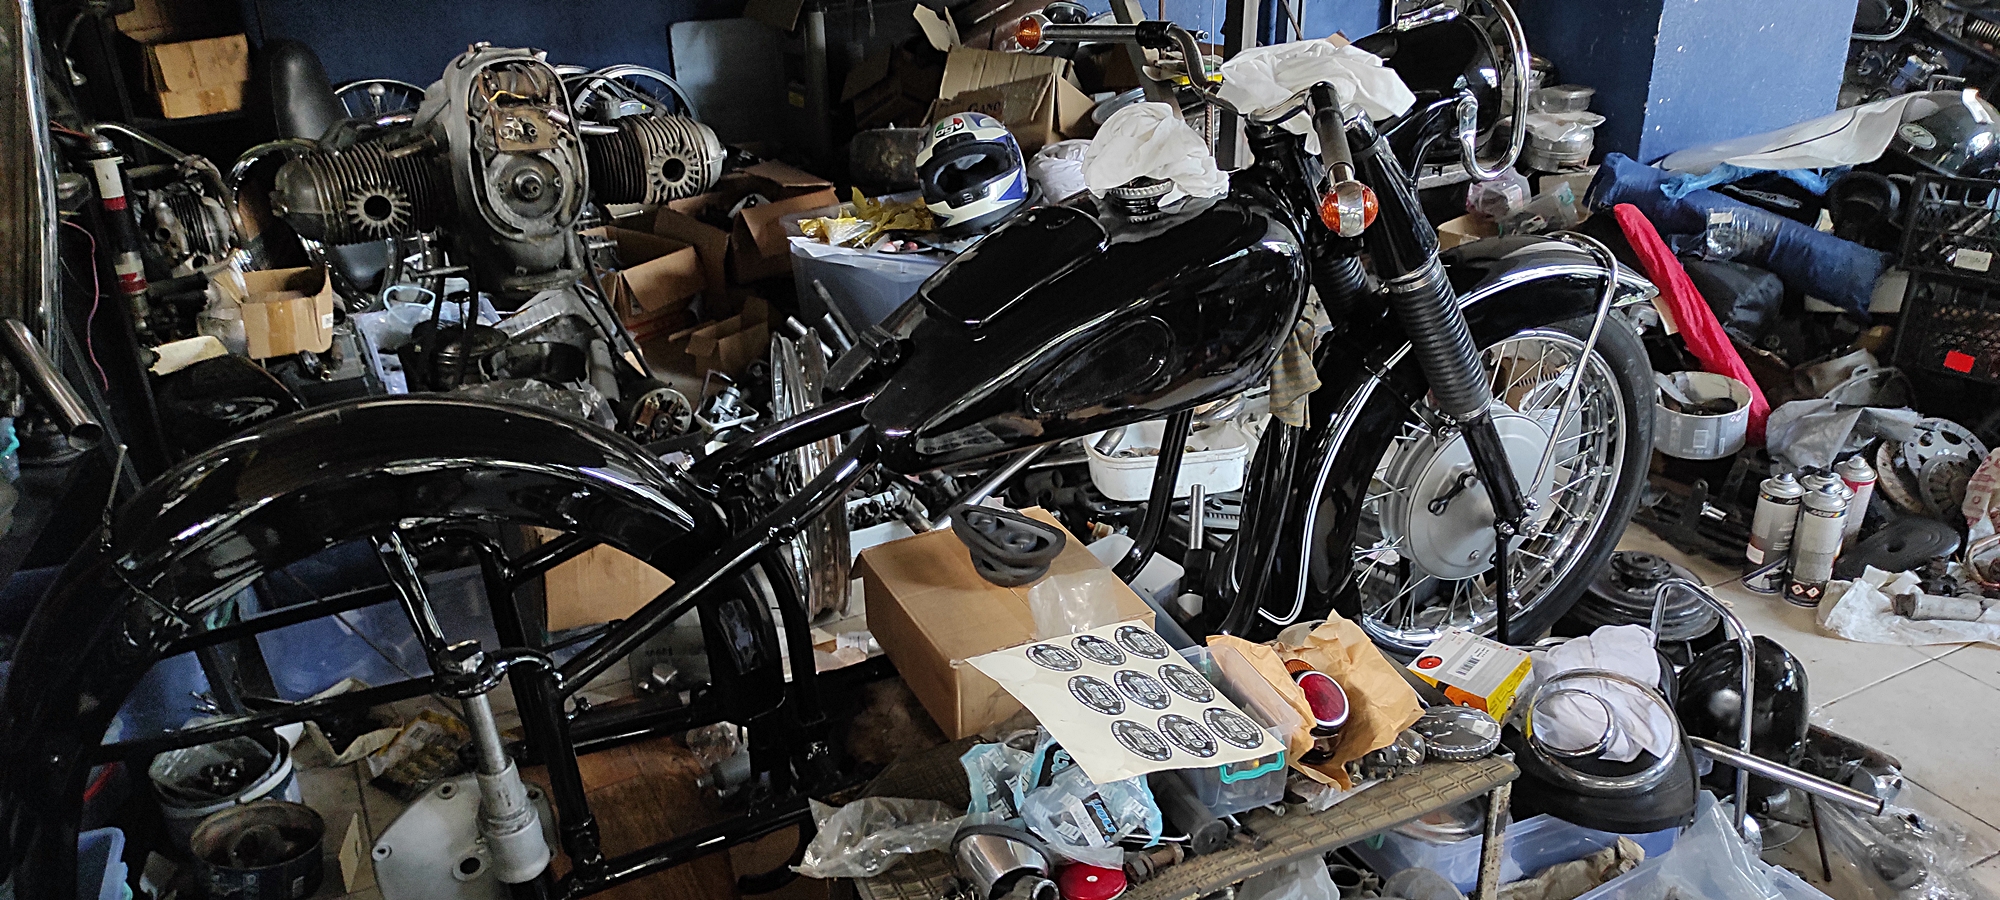 80-yillik-hurda-motosikletleri-tamir-edip-yeniden-kullanima-sunuyor-6423-dhaphoto10.jpg